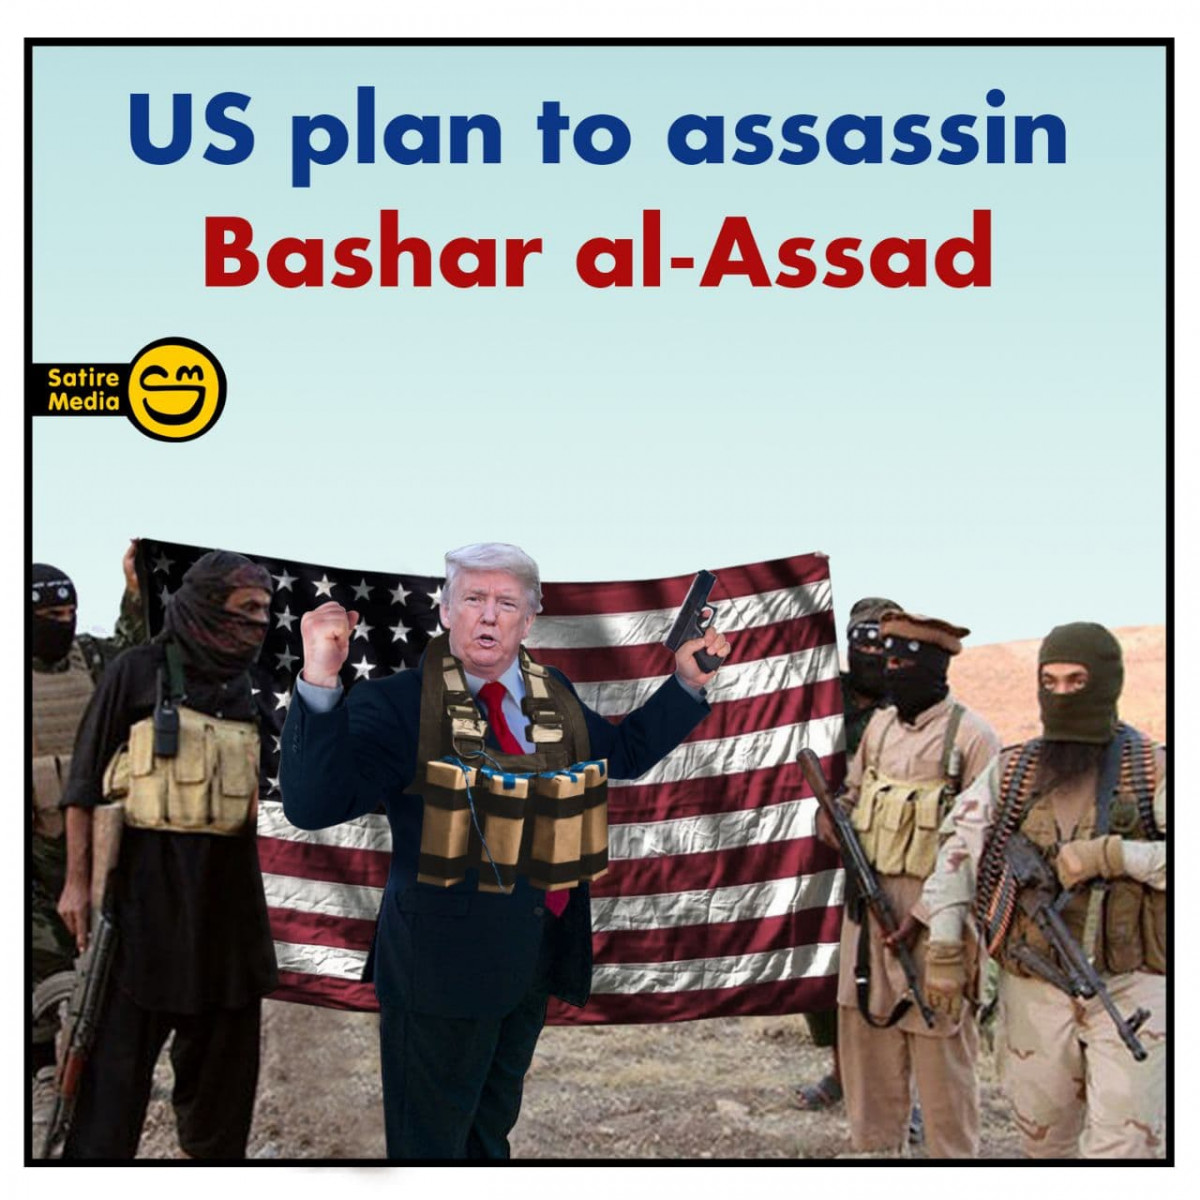 US plan to assassin Bashar al-Assad